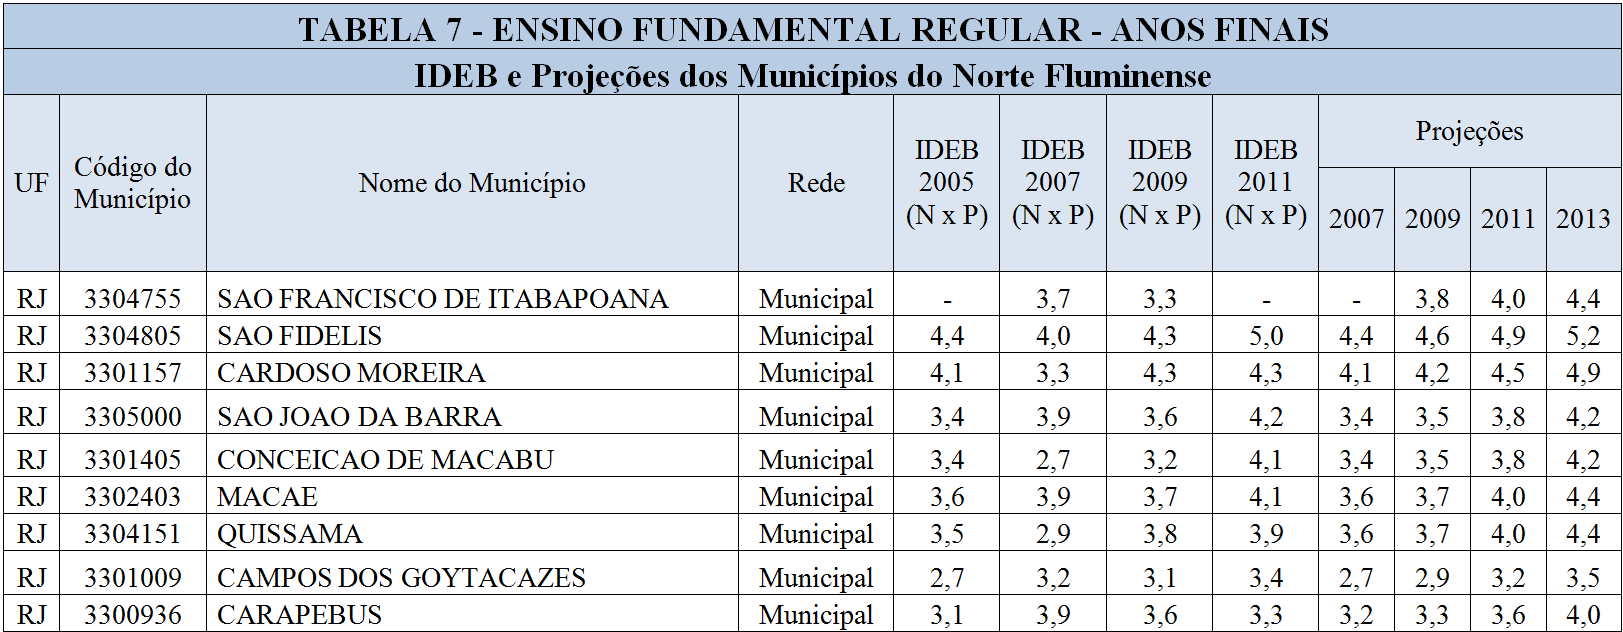 Abaixo a relação dos municípios do Norte Fluminense e seus respectivos índices em ordem decrescente a partir do IDEB 2011 separadamente para os anos iniciais e finais do Ensino Fundamental.